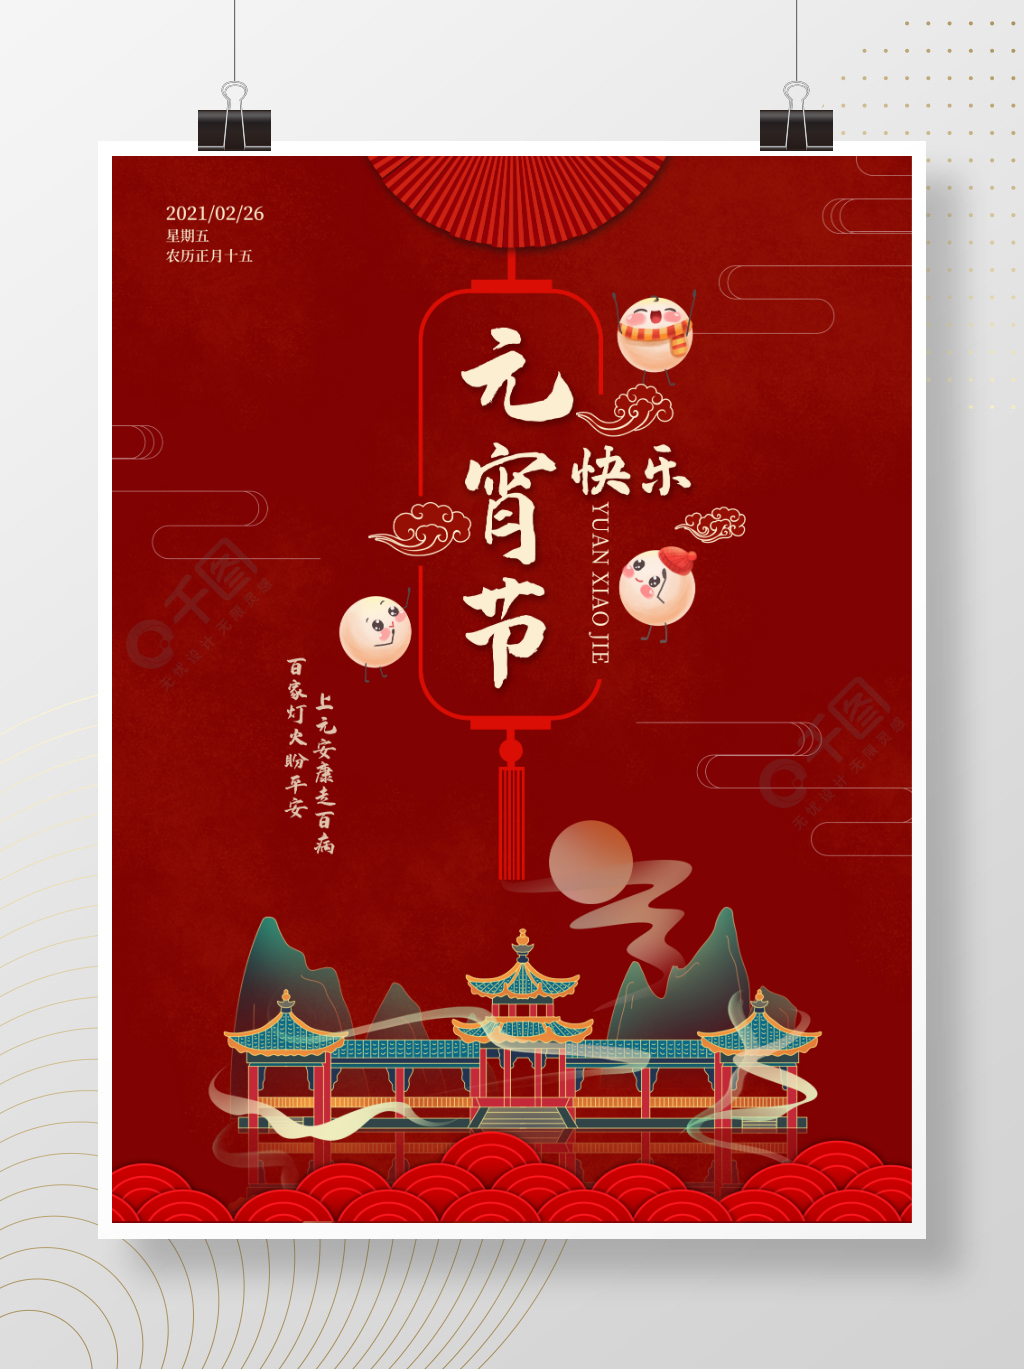 元宵节快乐汤圆中国风红色喜庆上元节海报1年前发布